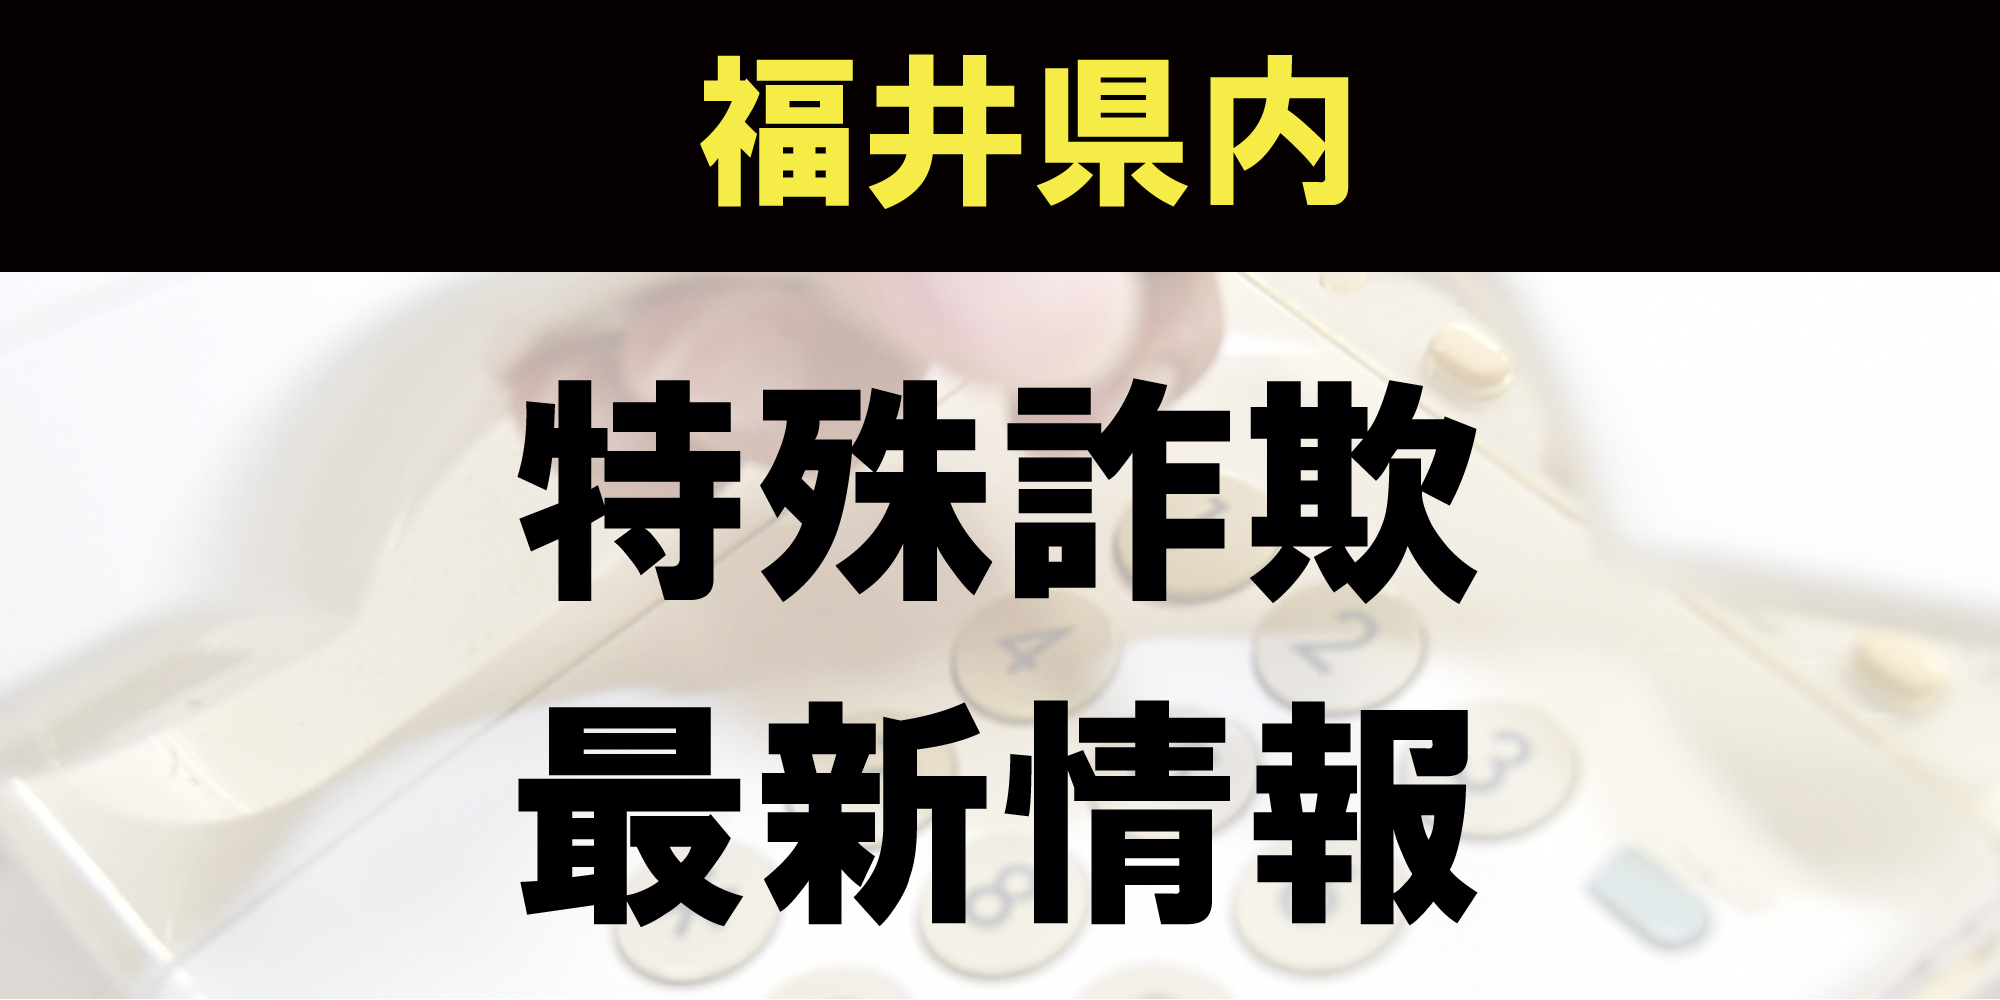 【特殊詐欺情報】福井市 9月2日　郵便局員名乗る電話「保険料の還付金がある」